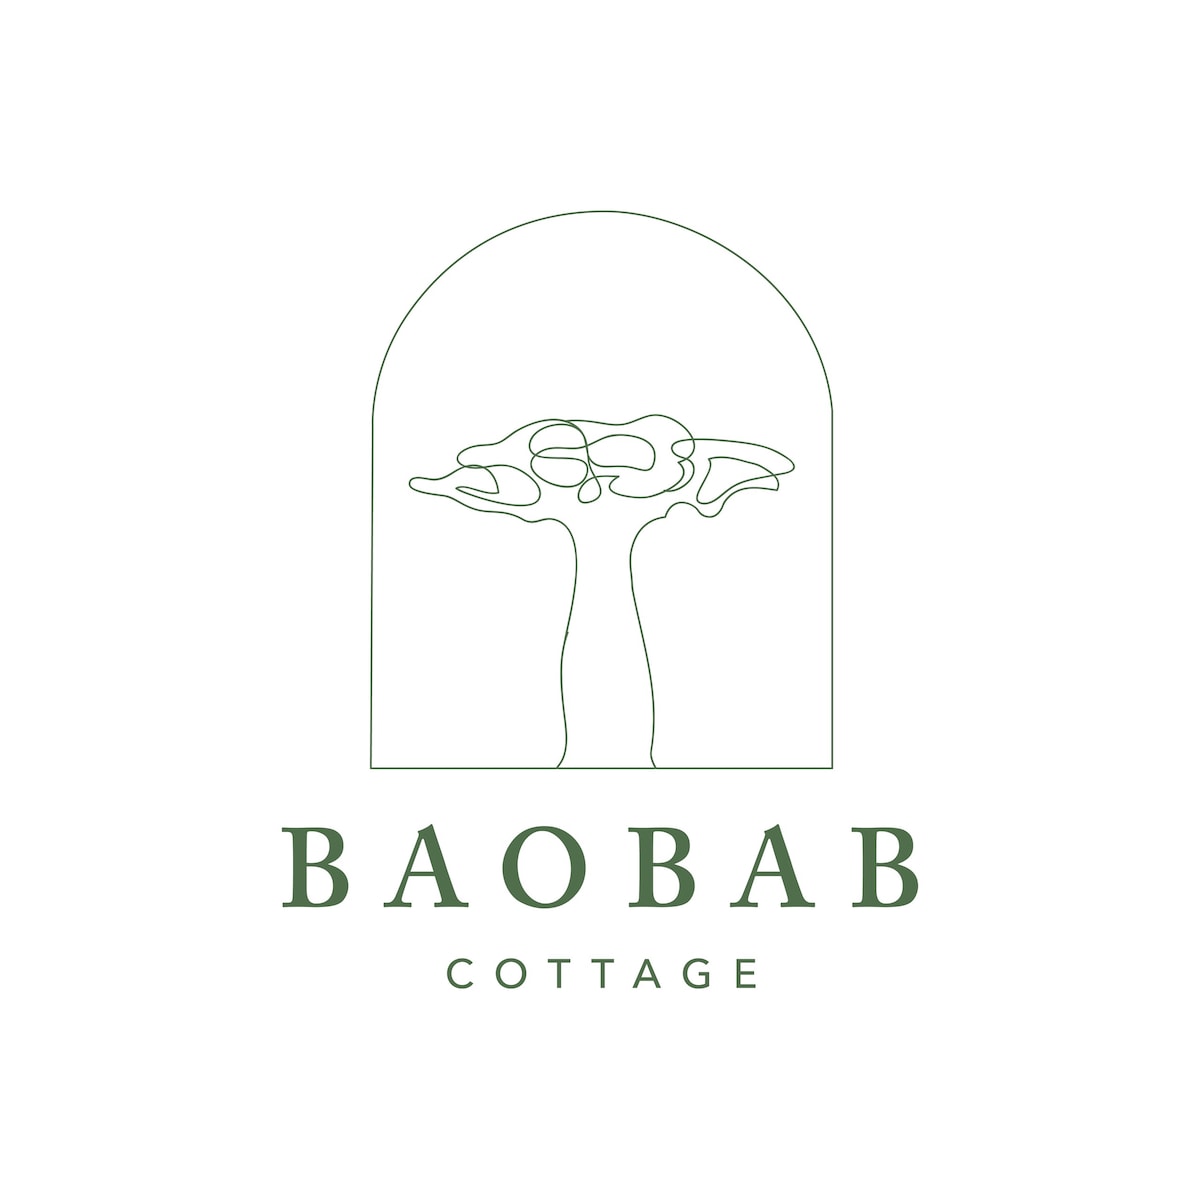 The Baobab小屋